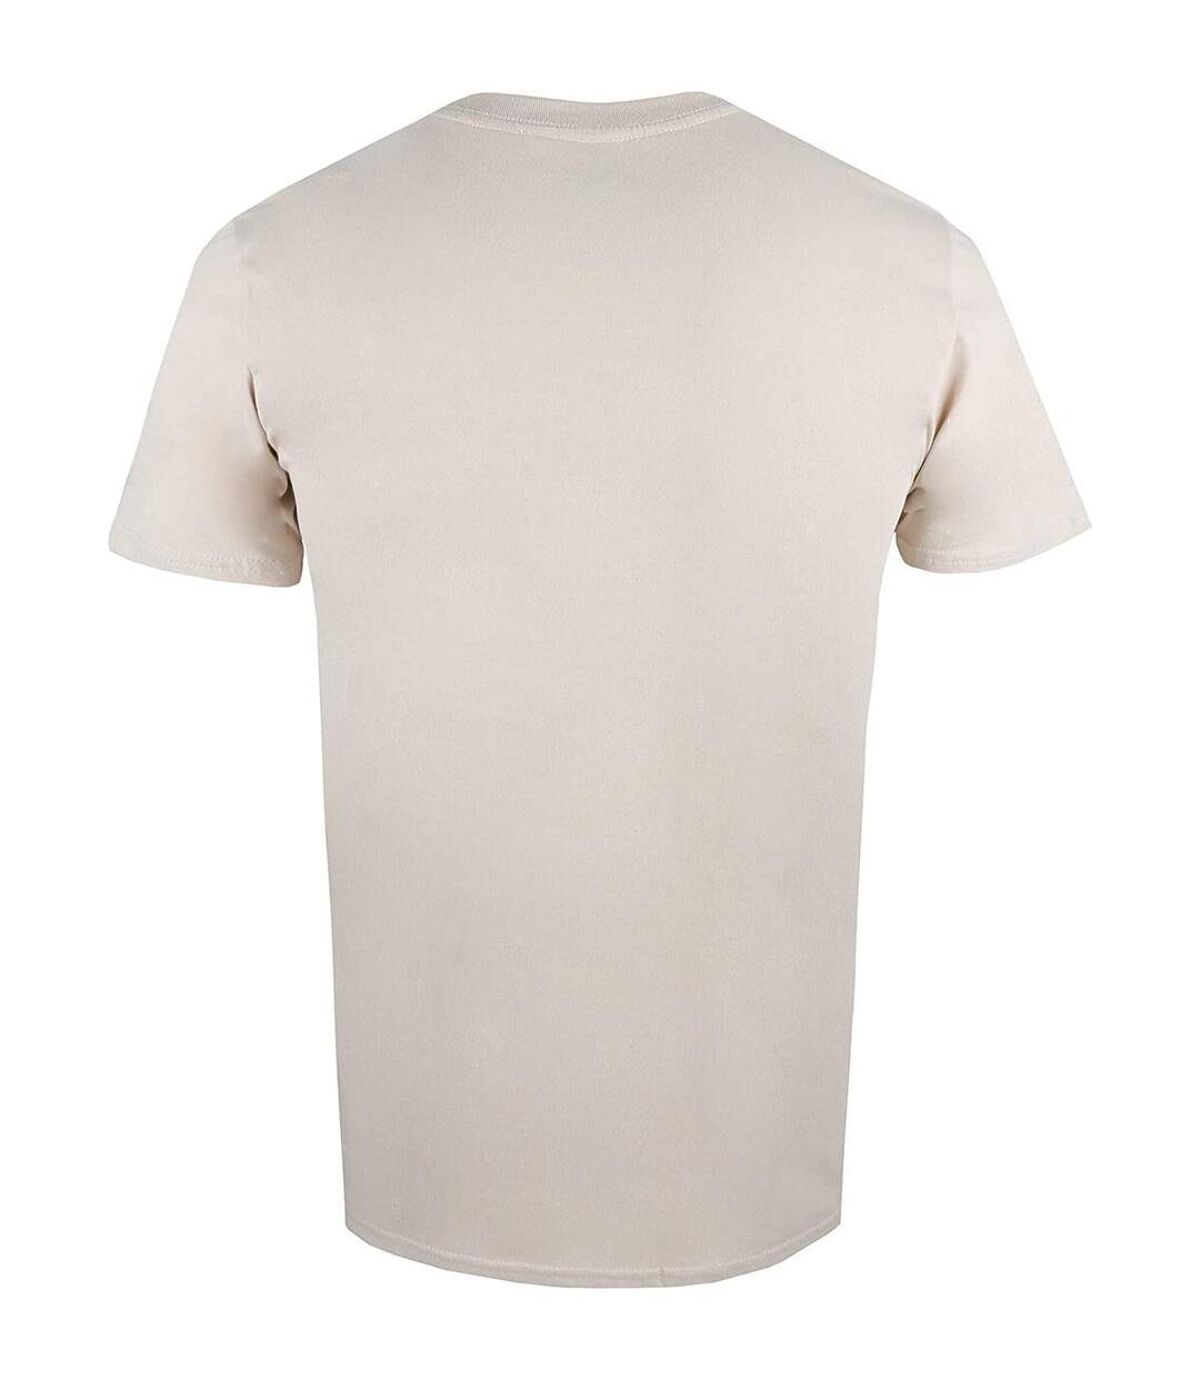 Marvel - T-shirt - Homme (Beige) - UTTV1736